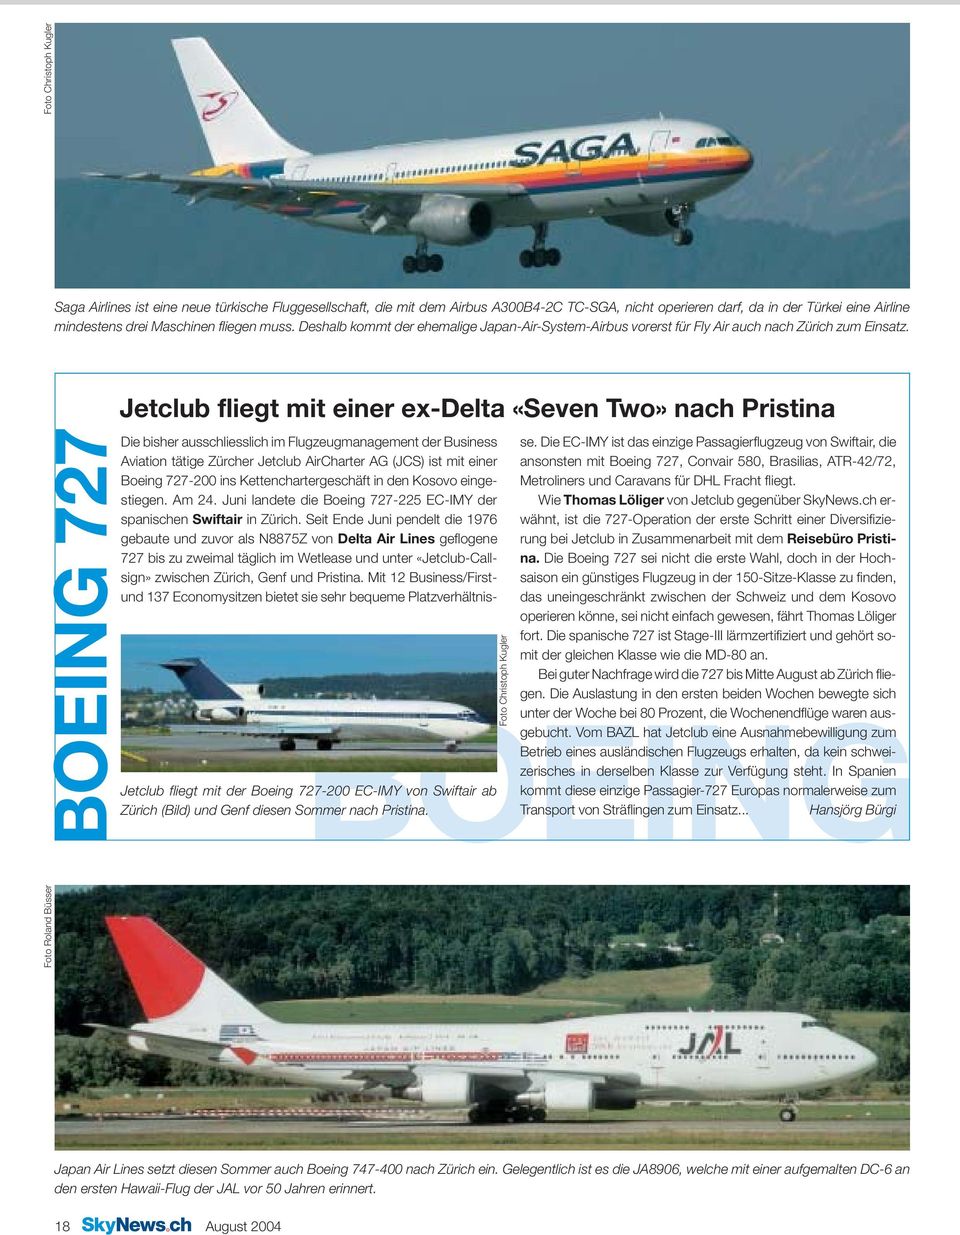 BOEING 727 Jetclub fliegt mit einer ex-delta «Seven Two» nach Pristina Die bisher ausschliesslich im Flugzeugmanagement der Business Aviation tätige Zürcher Jetclub AirCharter AG (JCS) ist mit einer